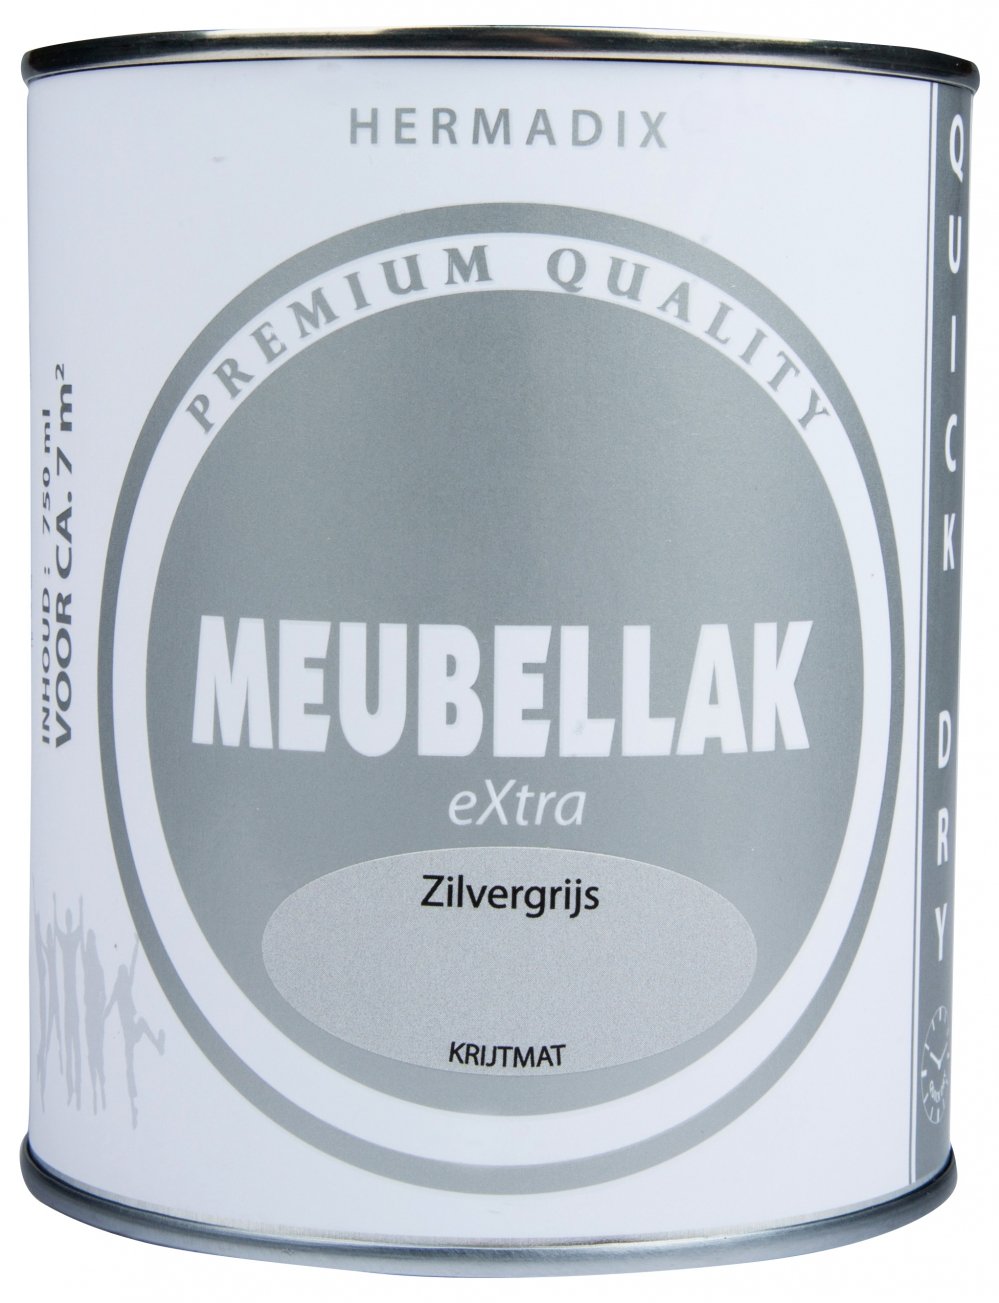 Hermadix - hermadix-meubellak-extra-zilvergrijs-krijtmat-verfcompleet